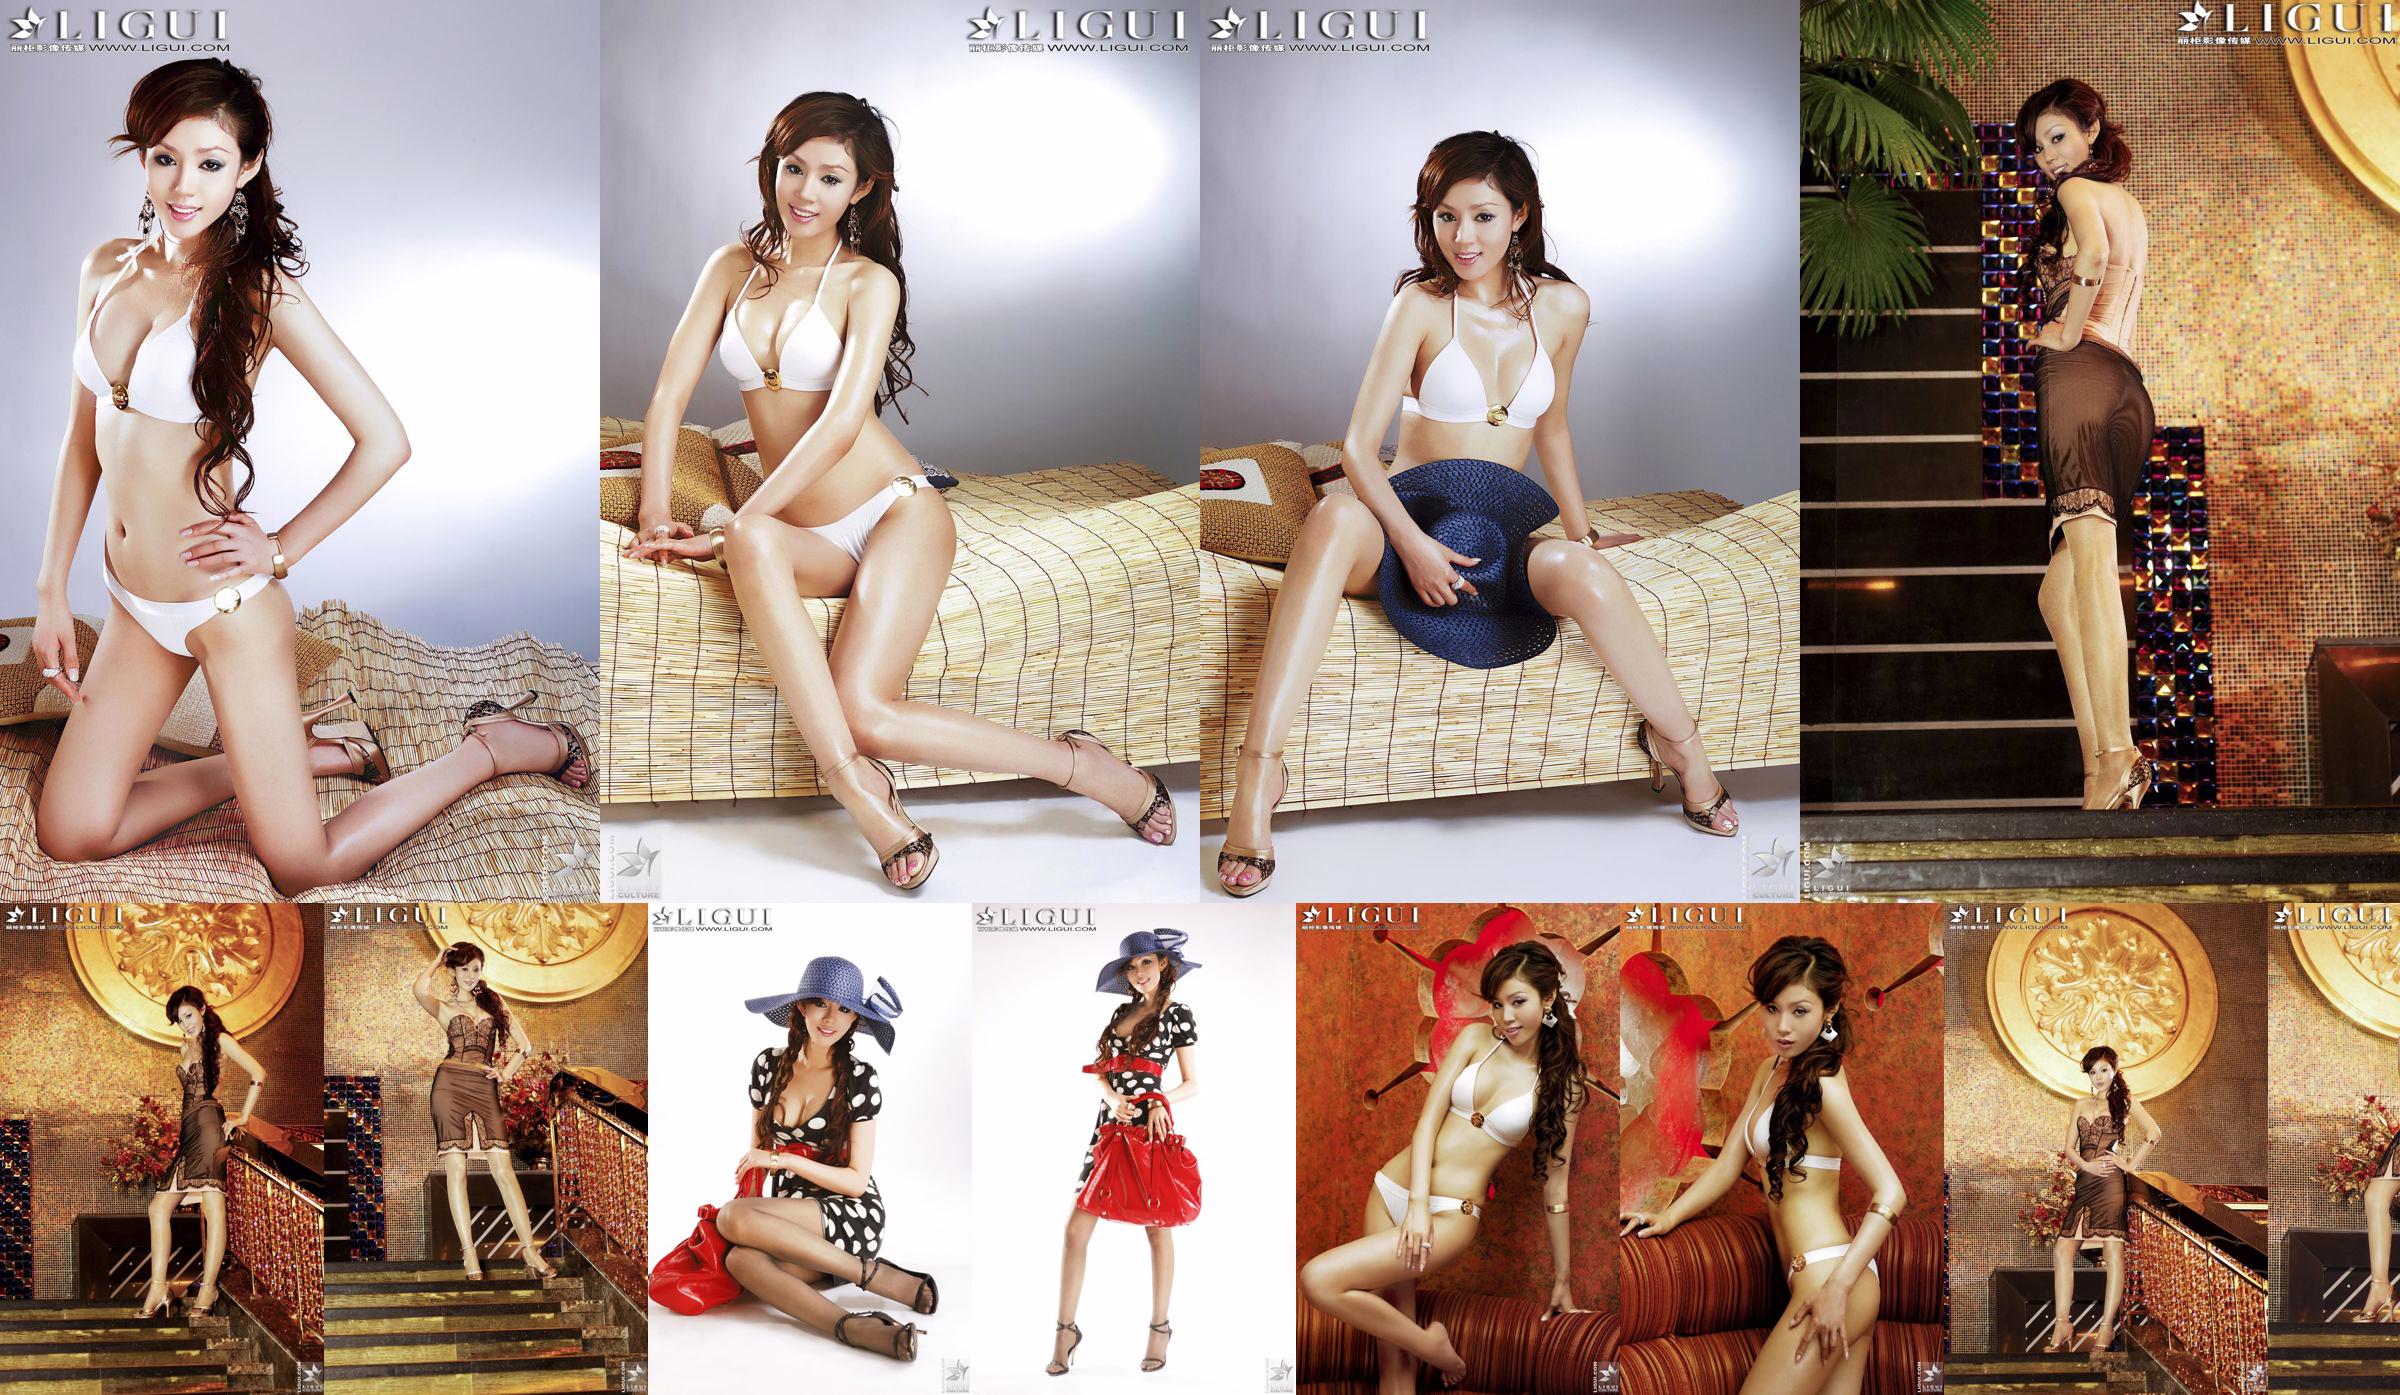 [丽 柜 LiGui] Model Yao Jinjins "Bikini + Kleid" Schöne Beine und seidige Füße Foto Bild No.db7d50 Seite 3